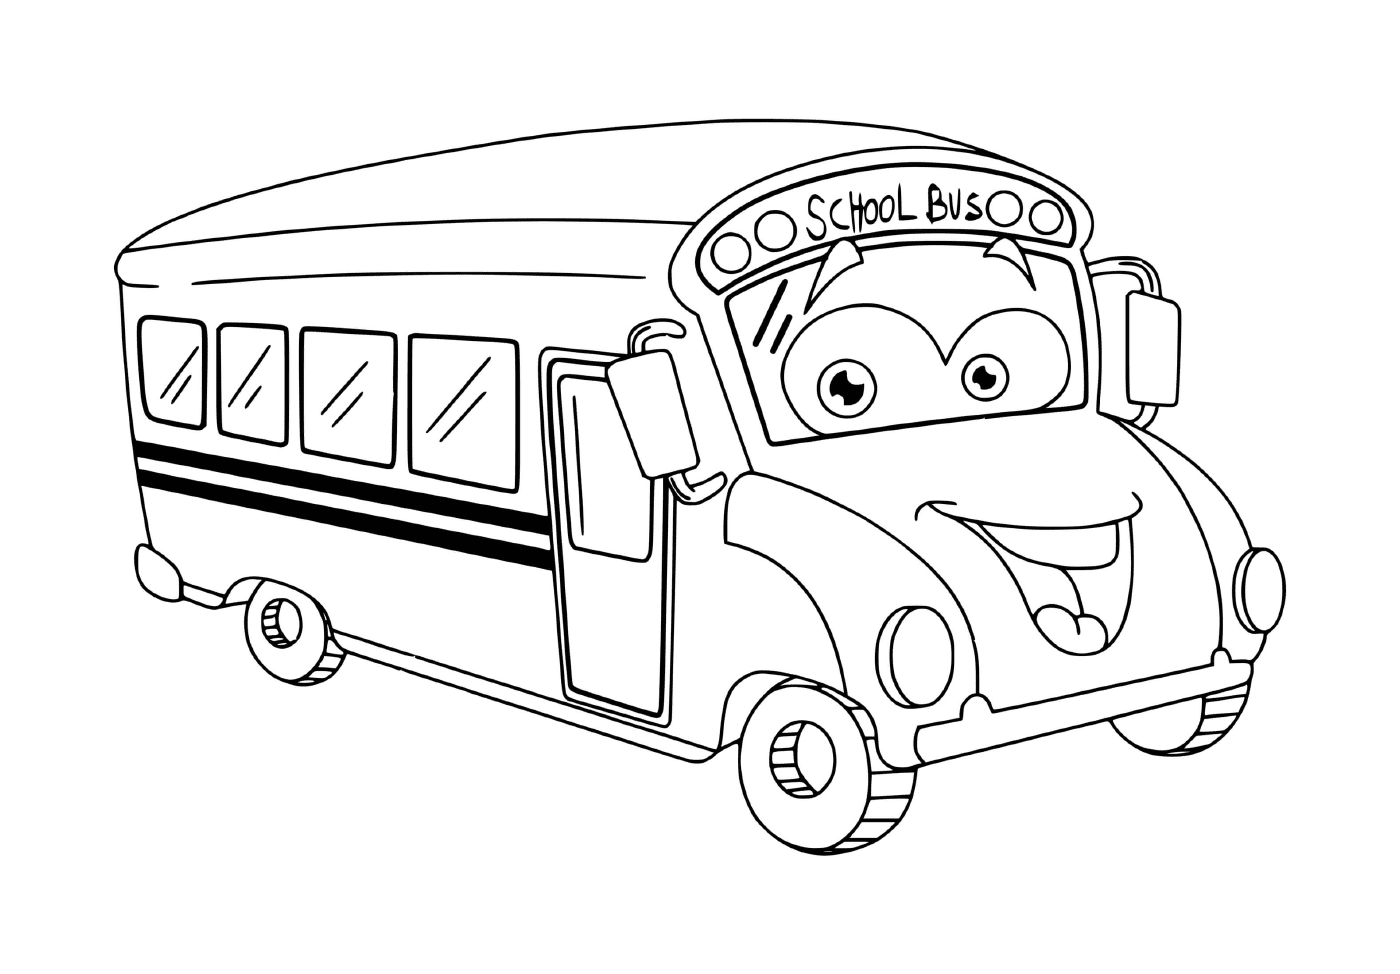  Un autobús escolar para niños 